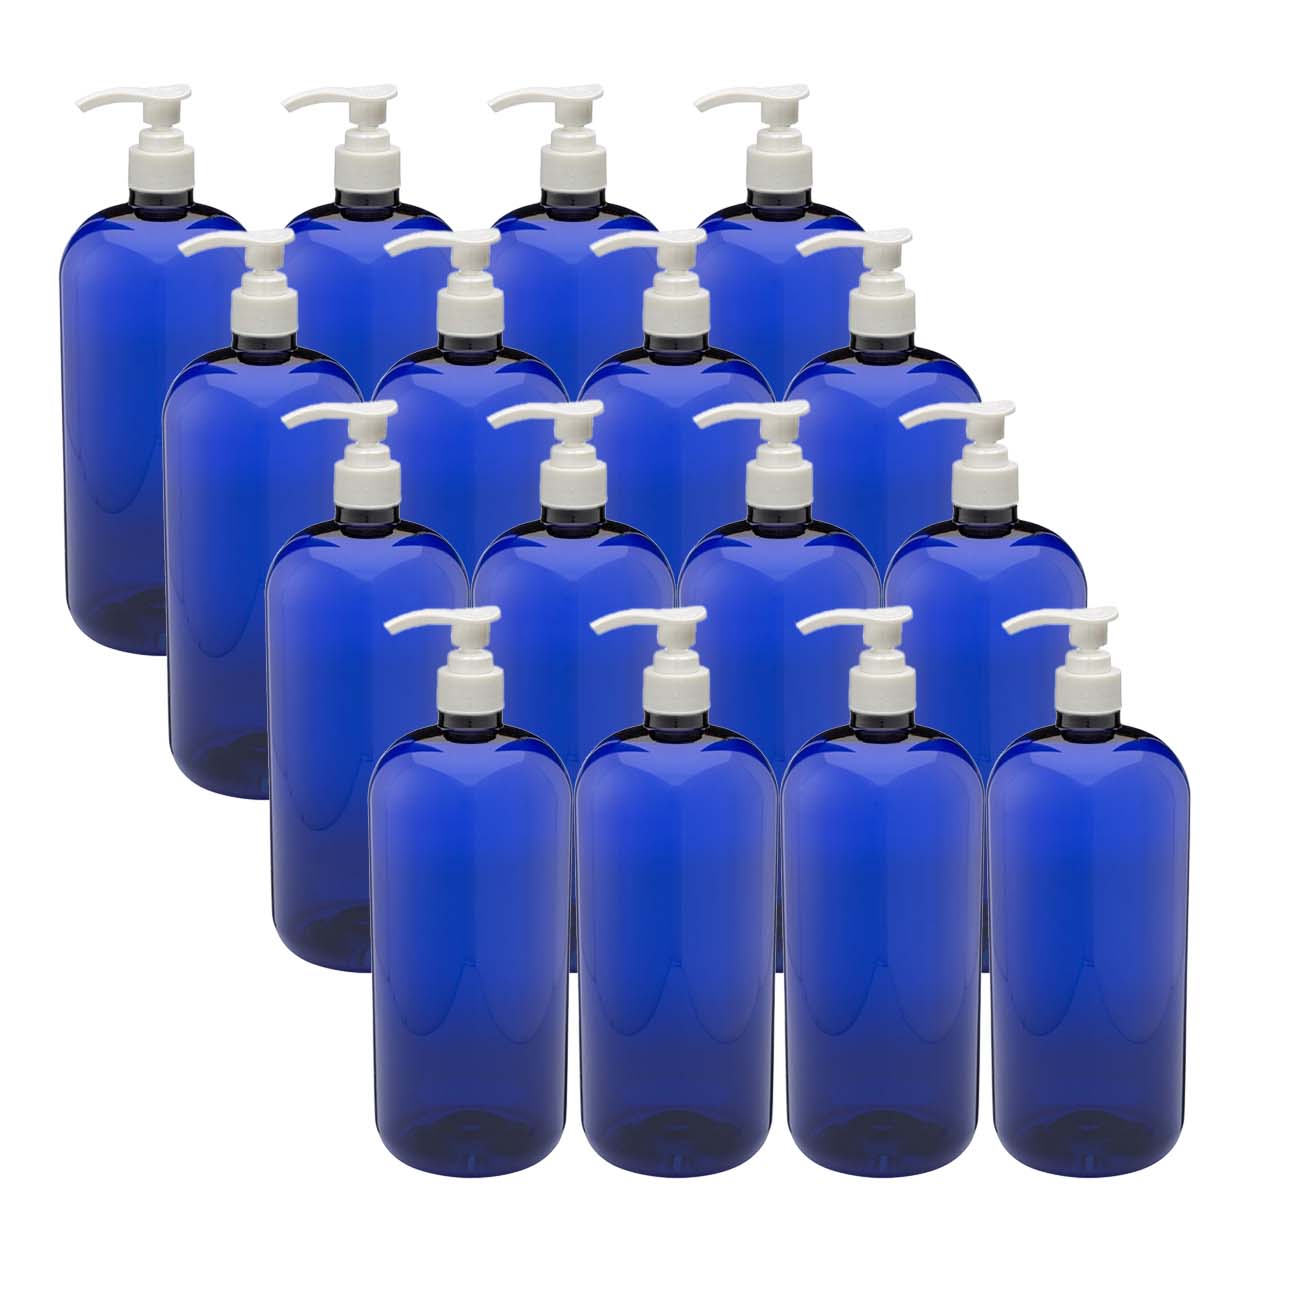 16 ounce cobalt blue bottles (16 count PET plastic)